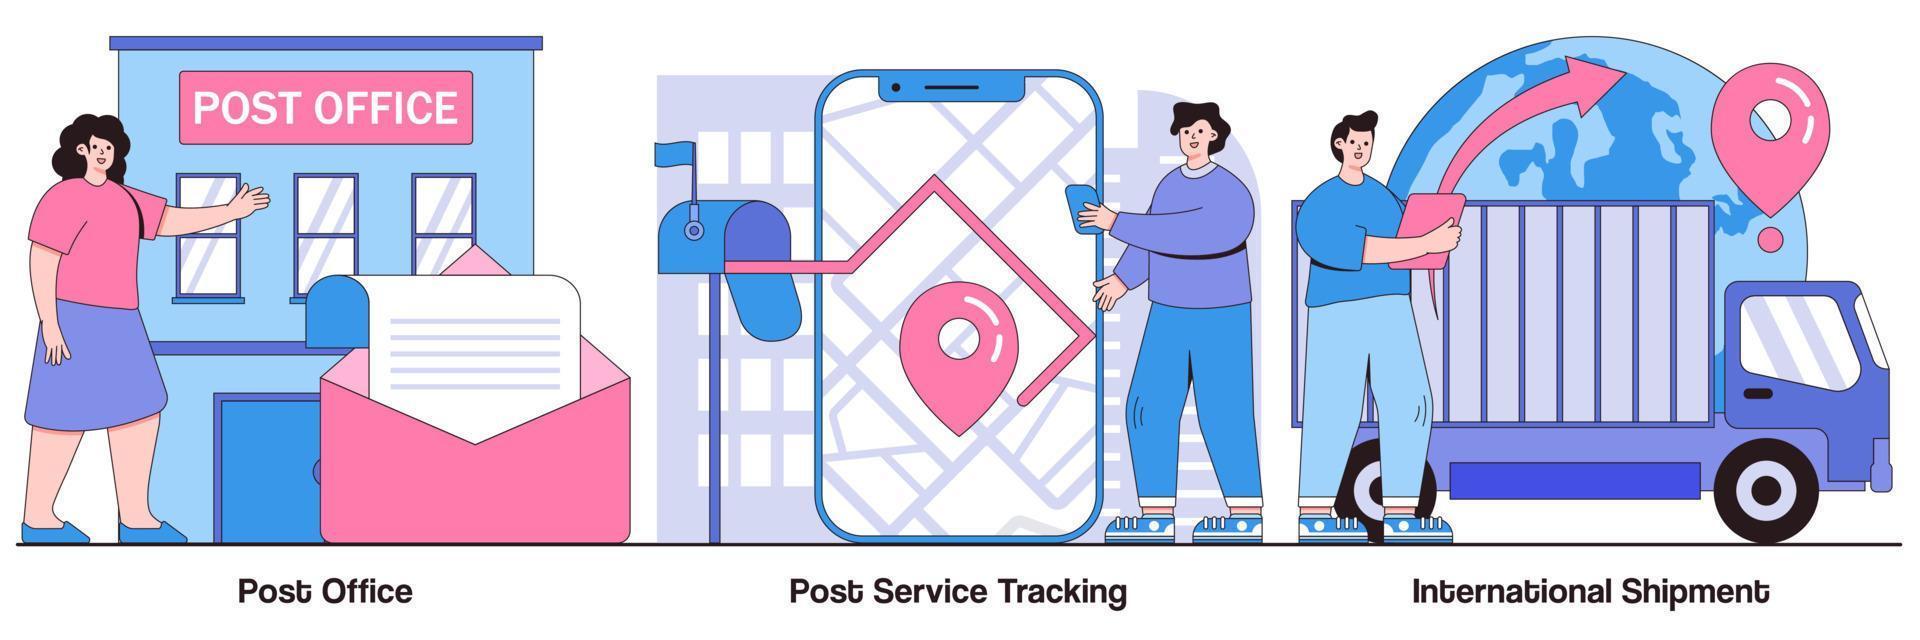 postkontor, spårning efter service och internationell leverans illustrerad förpackning vektor